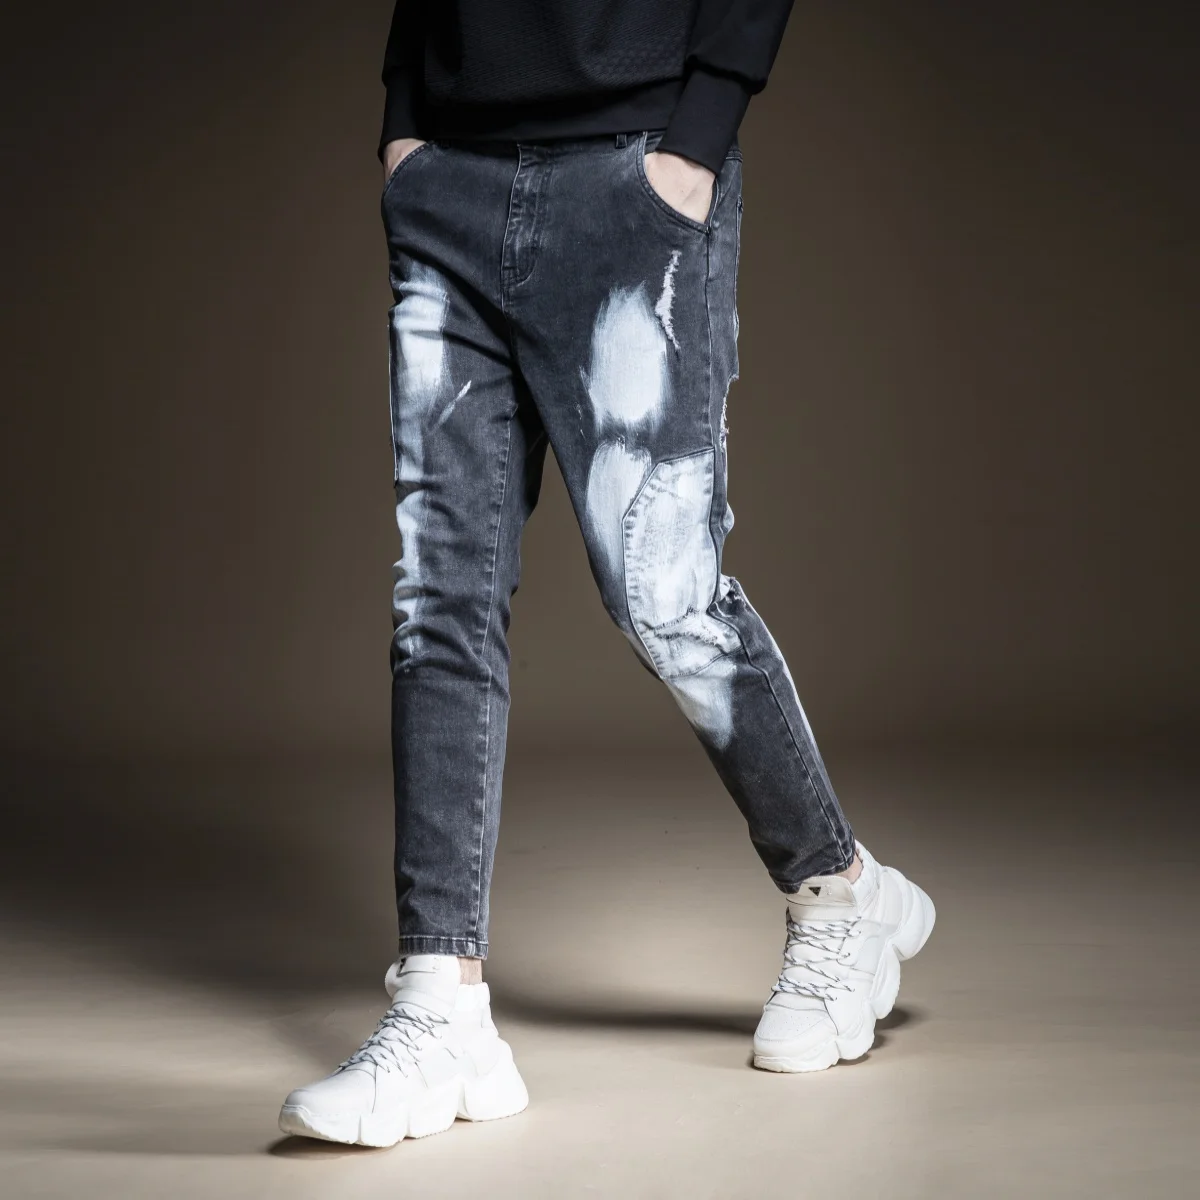 Джинсы, специальное предложение, поддельные дизайнерские вещи, бренд Pinli,, зимние новые мужские джинсовые штаны, подходят для маленьких ног, стираются водой, B194316195